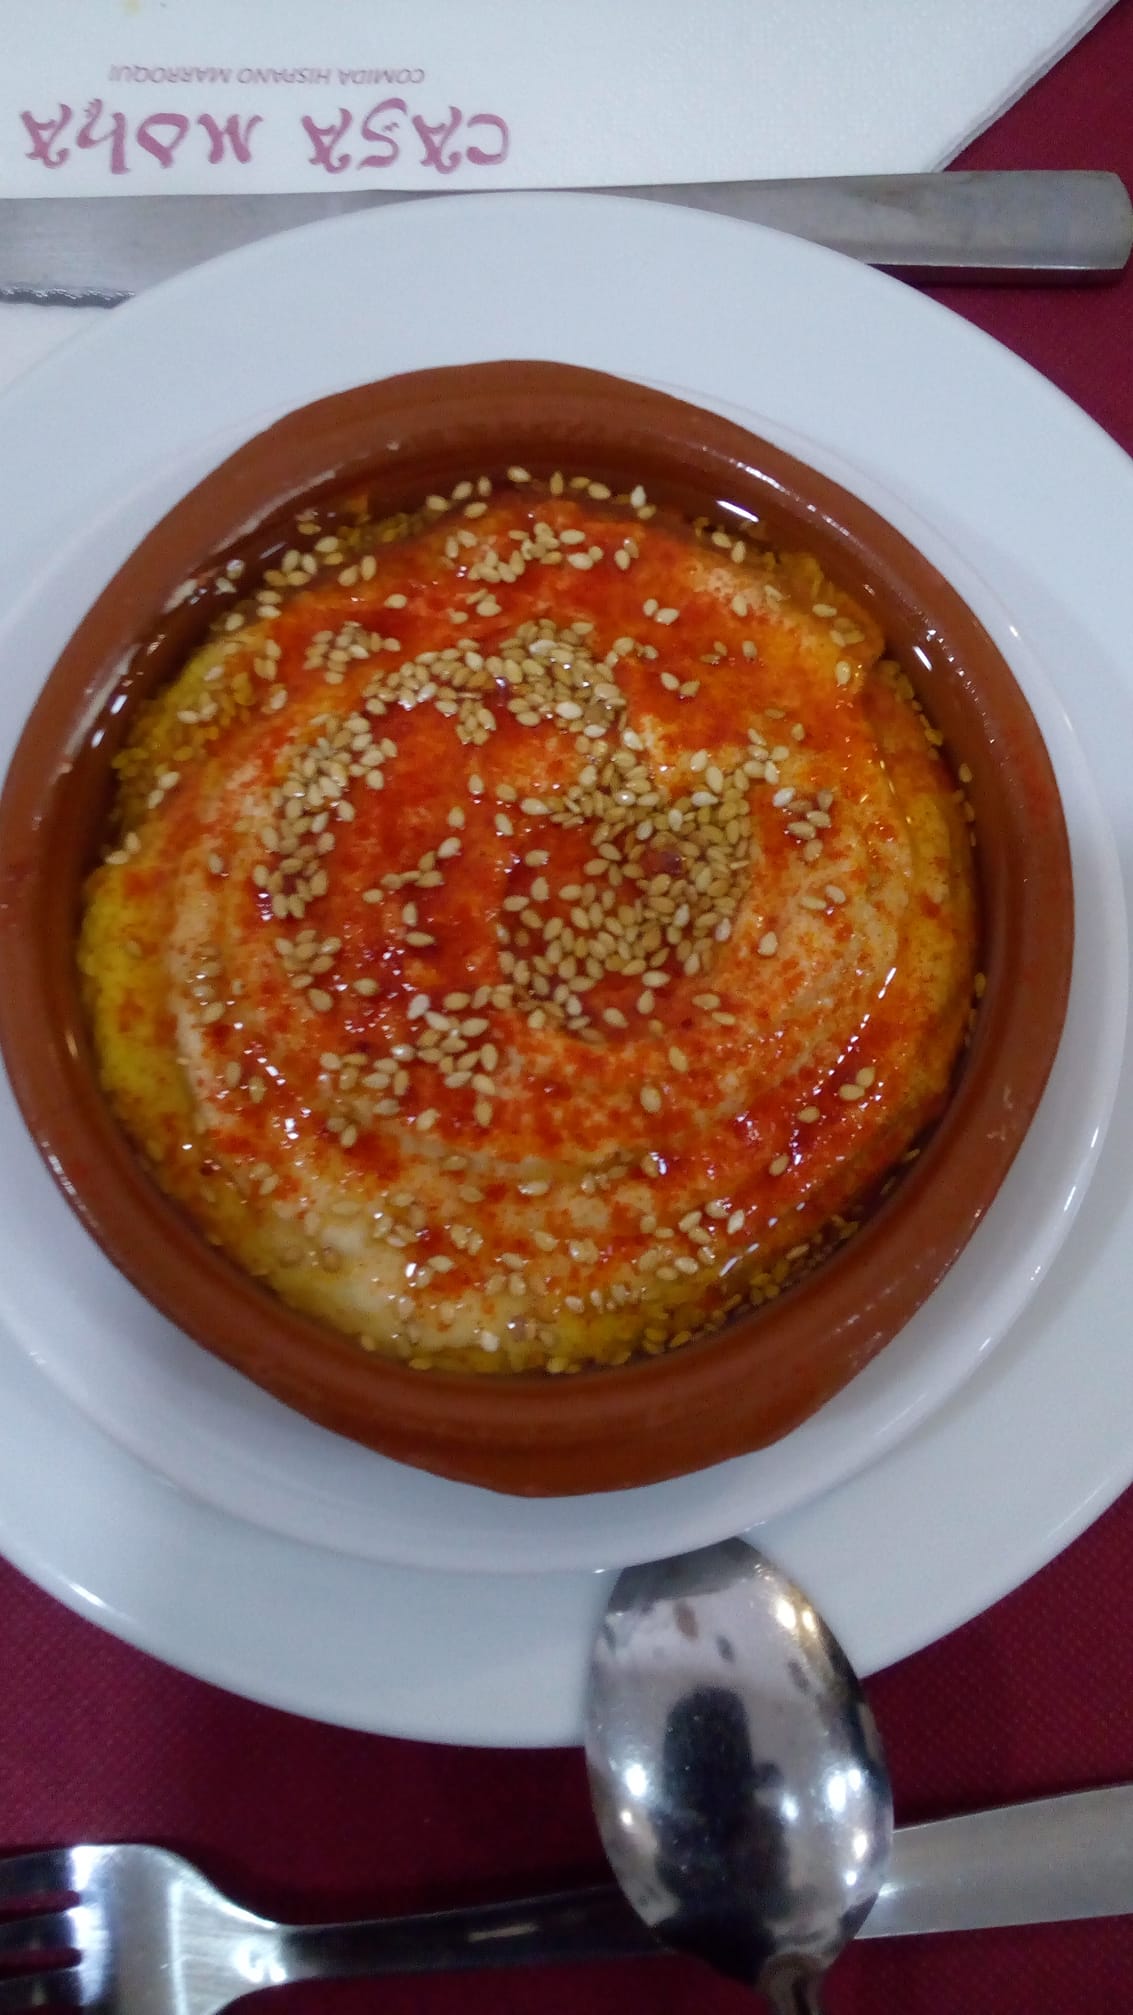 Hummus Casa Moha punta umbría comida marroquí y mediterránea 